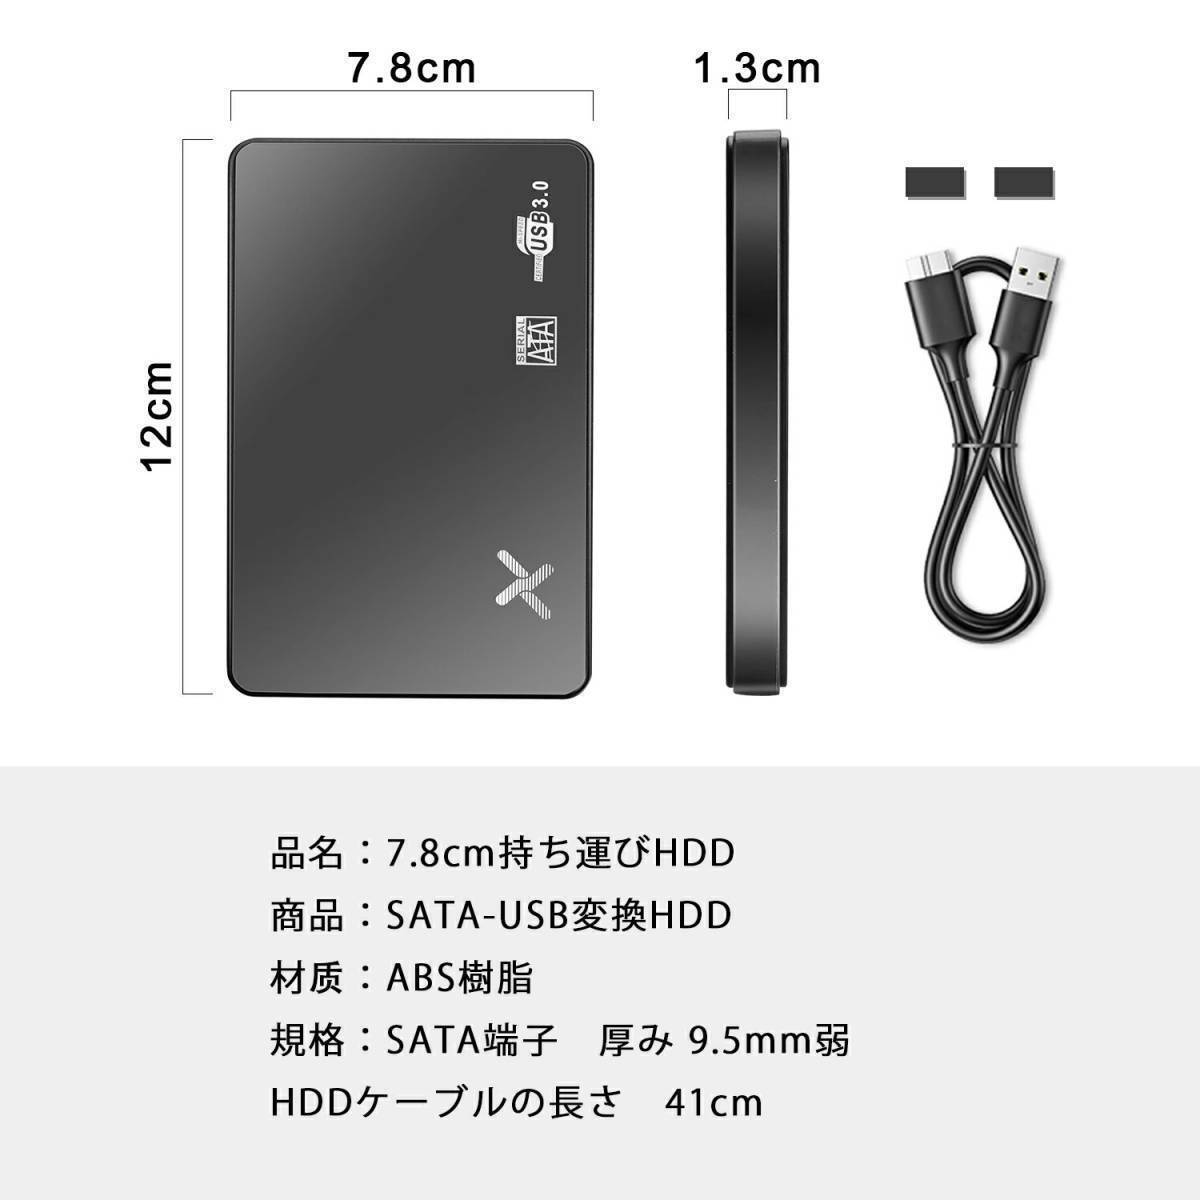 [ хорошая вещь ]HDD500GB установленный снаружи жесткий диск 2.5 дюймовый SATA USB3.0 проверка портативный хранение USB кабель ноутбук PC Windows Mac2